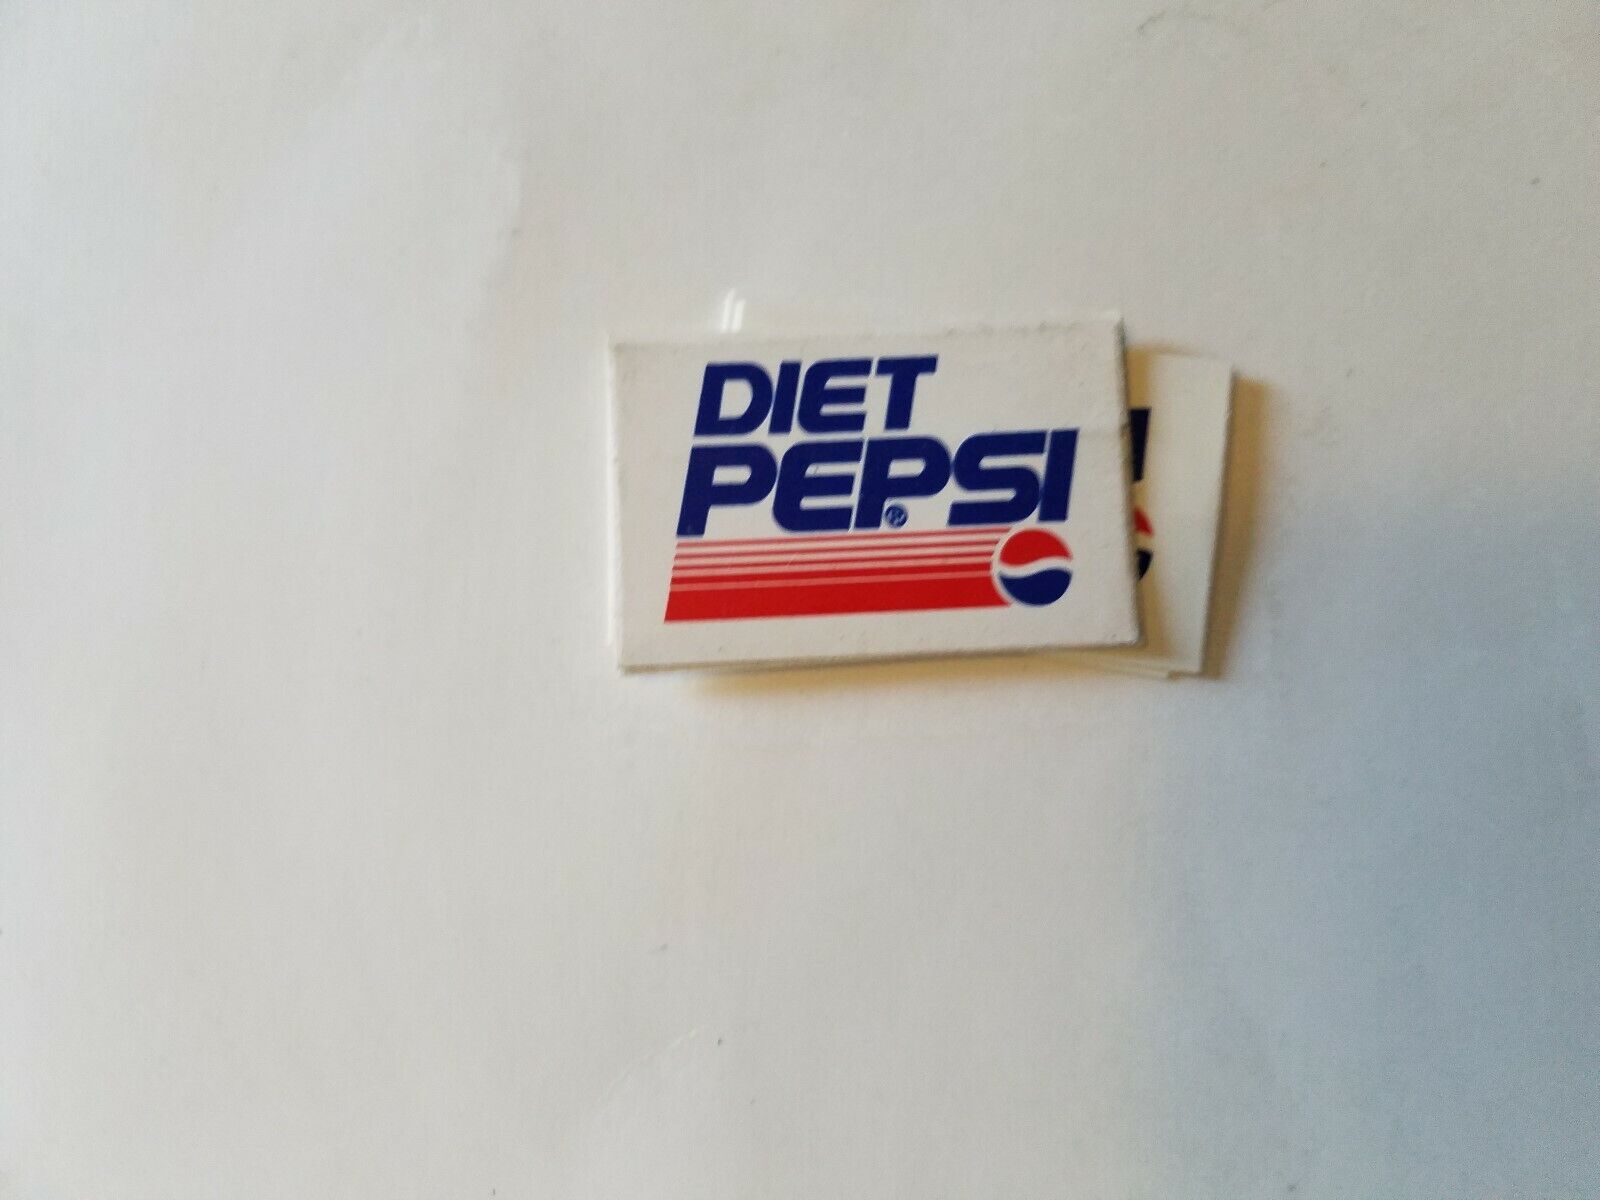 Diet Pepsi - Sticker about 1 1/4